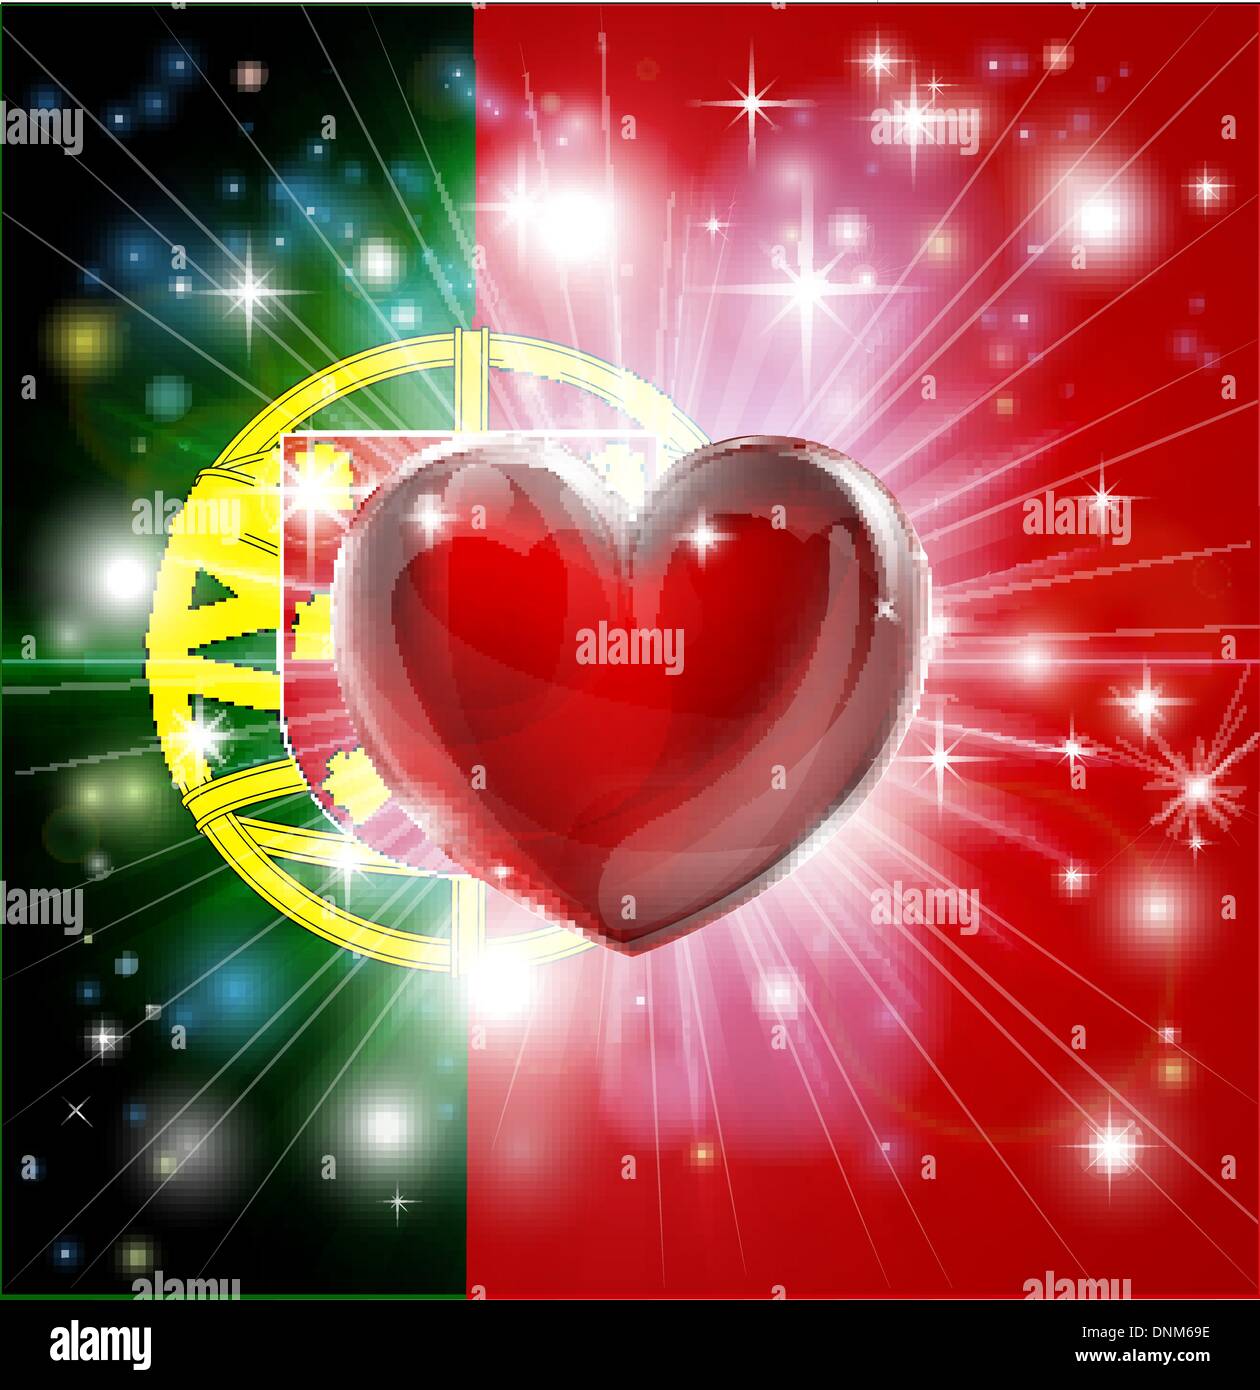 Flagge von Portugal patriotischen Hintergrund mit pyrotechnischen oder leicht platzen und Liebe Herz in der Mitte Stock Vektor